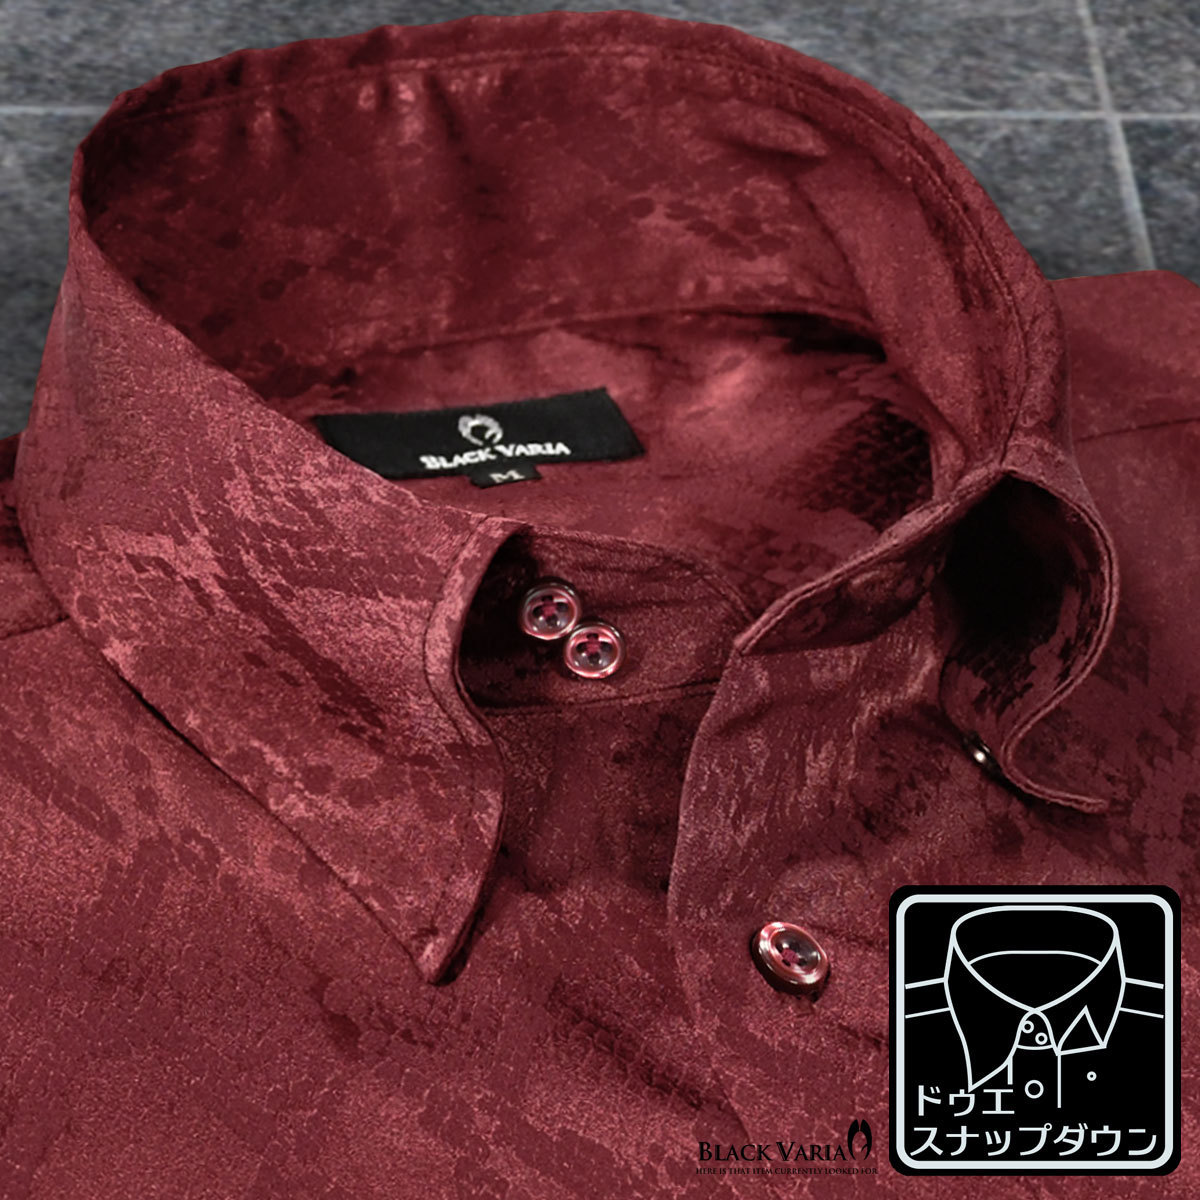 181711-win BLACK VARIAドゥエボットーニ パイソン蛇柄 ジャガード スナップダウン ドレスシャツ メンズ(ワインレッド赤) XL 披露宴 衣装_画像1